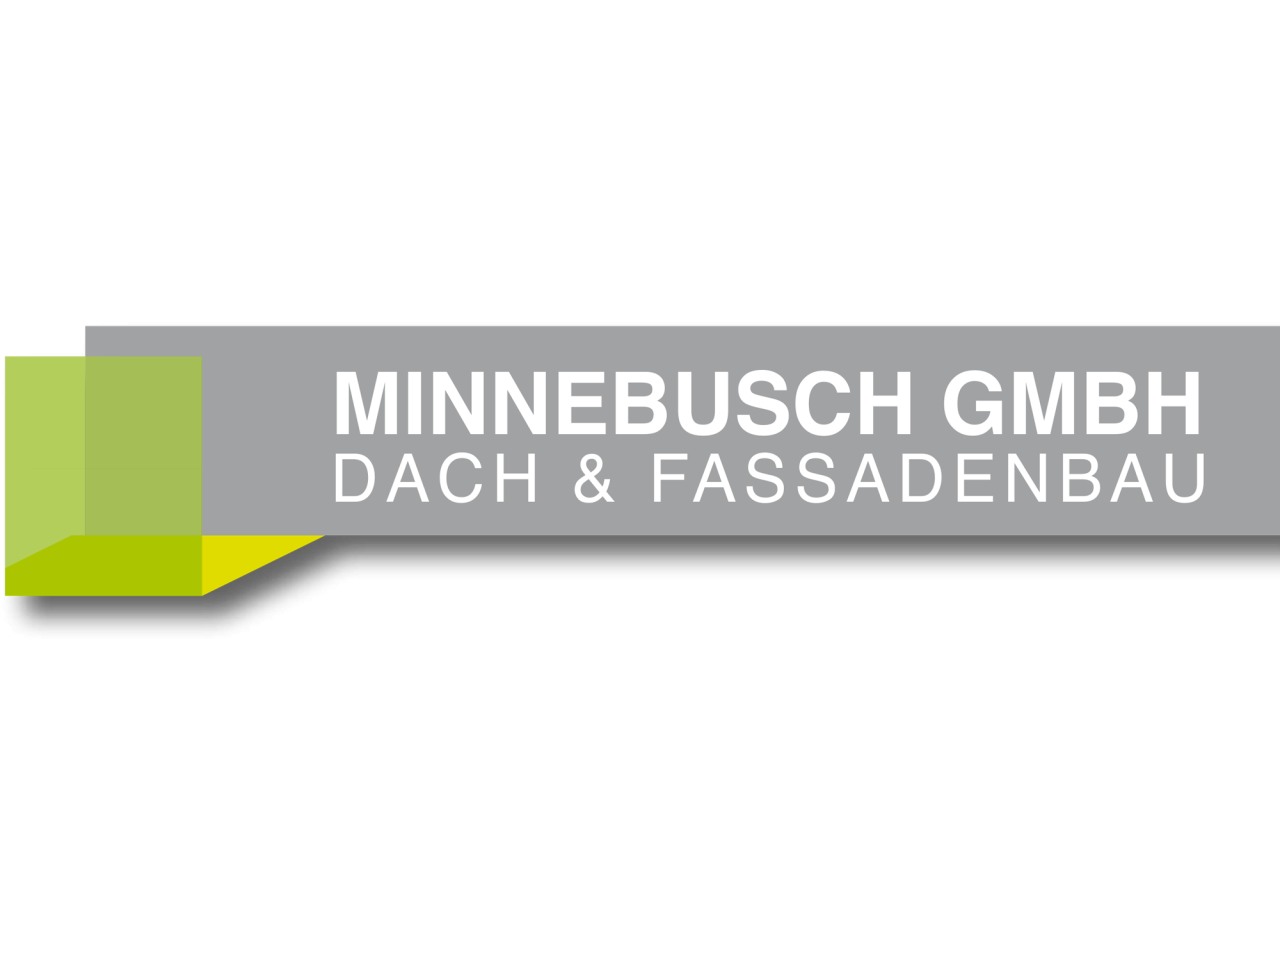 MINNEBUSCH GmbH